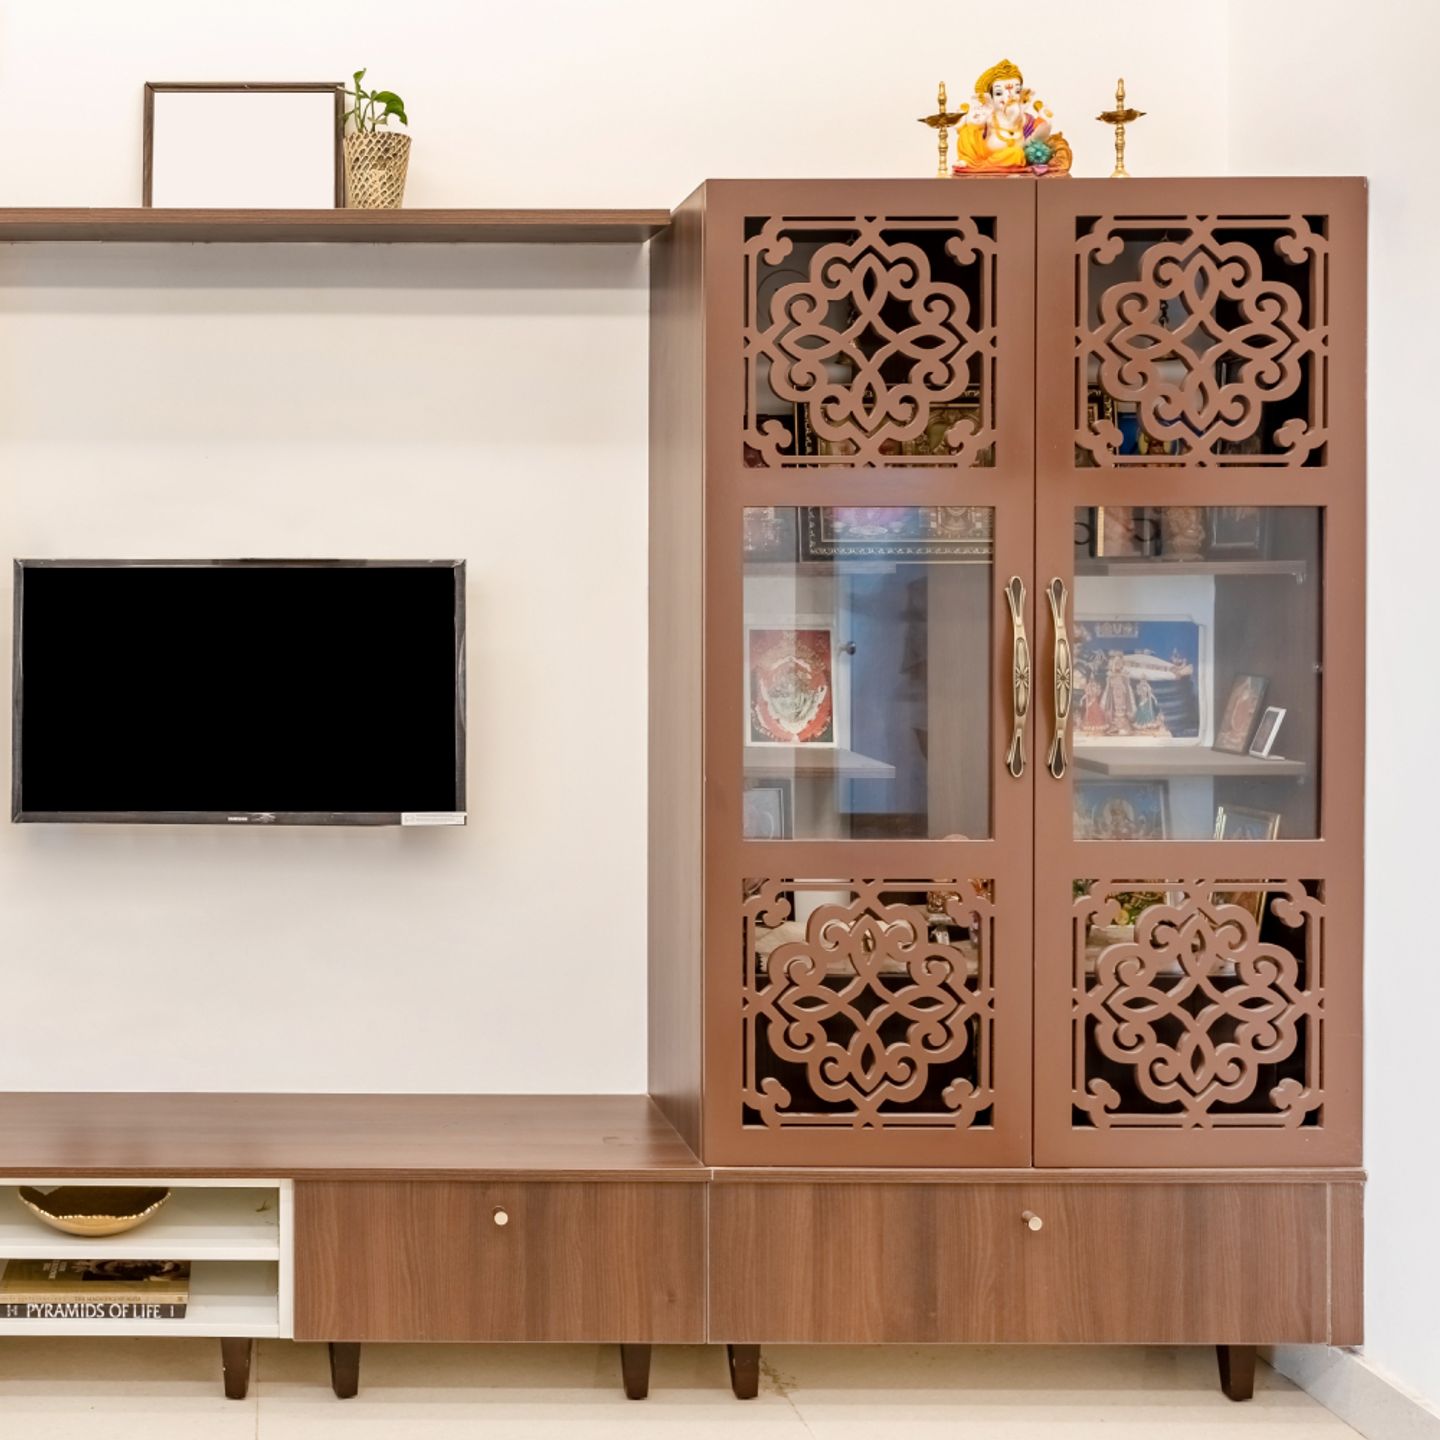 Mandir Design Integrated With TV Unit - Livspace